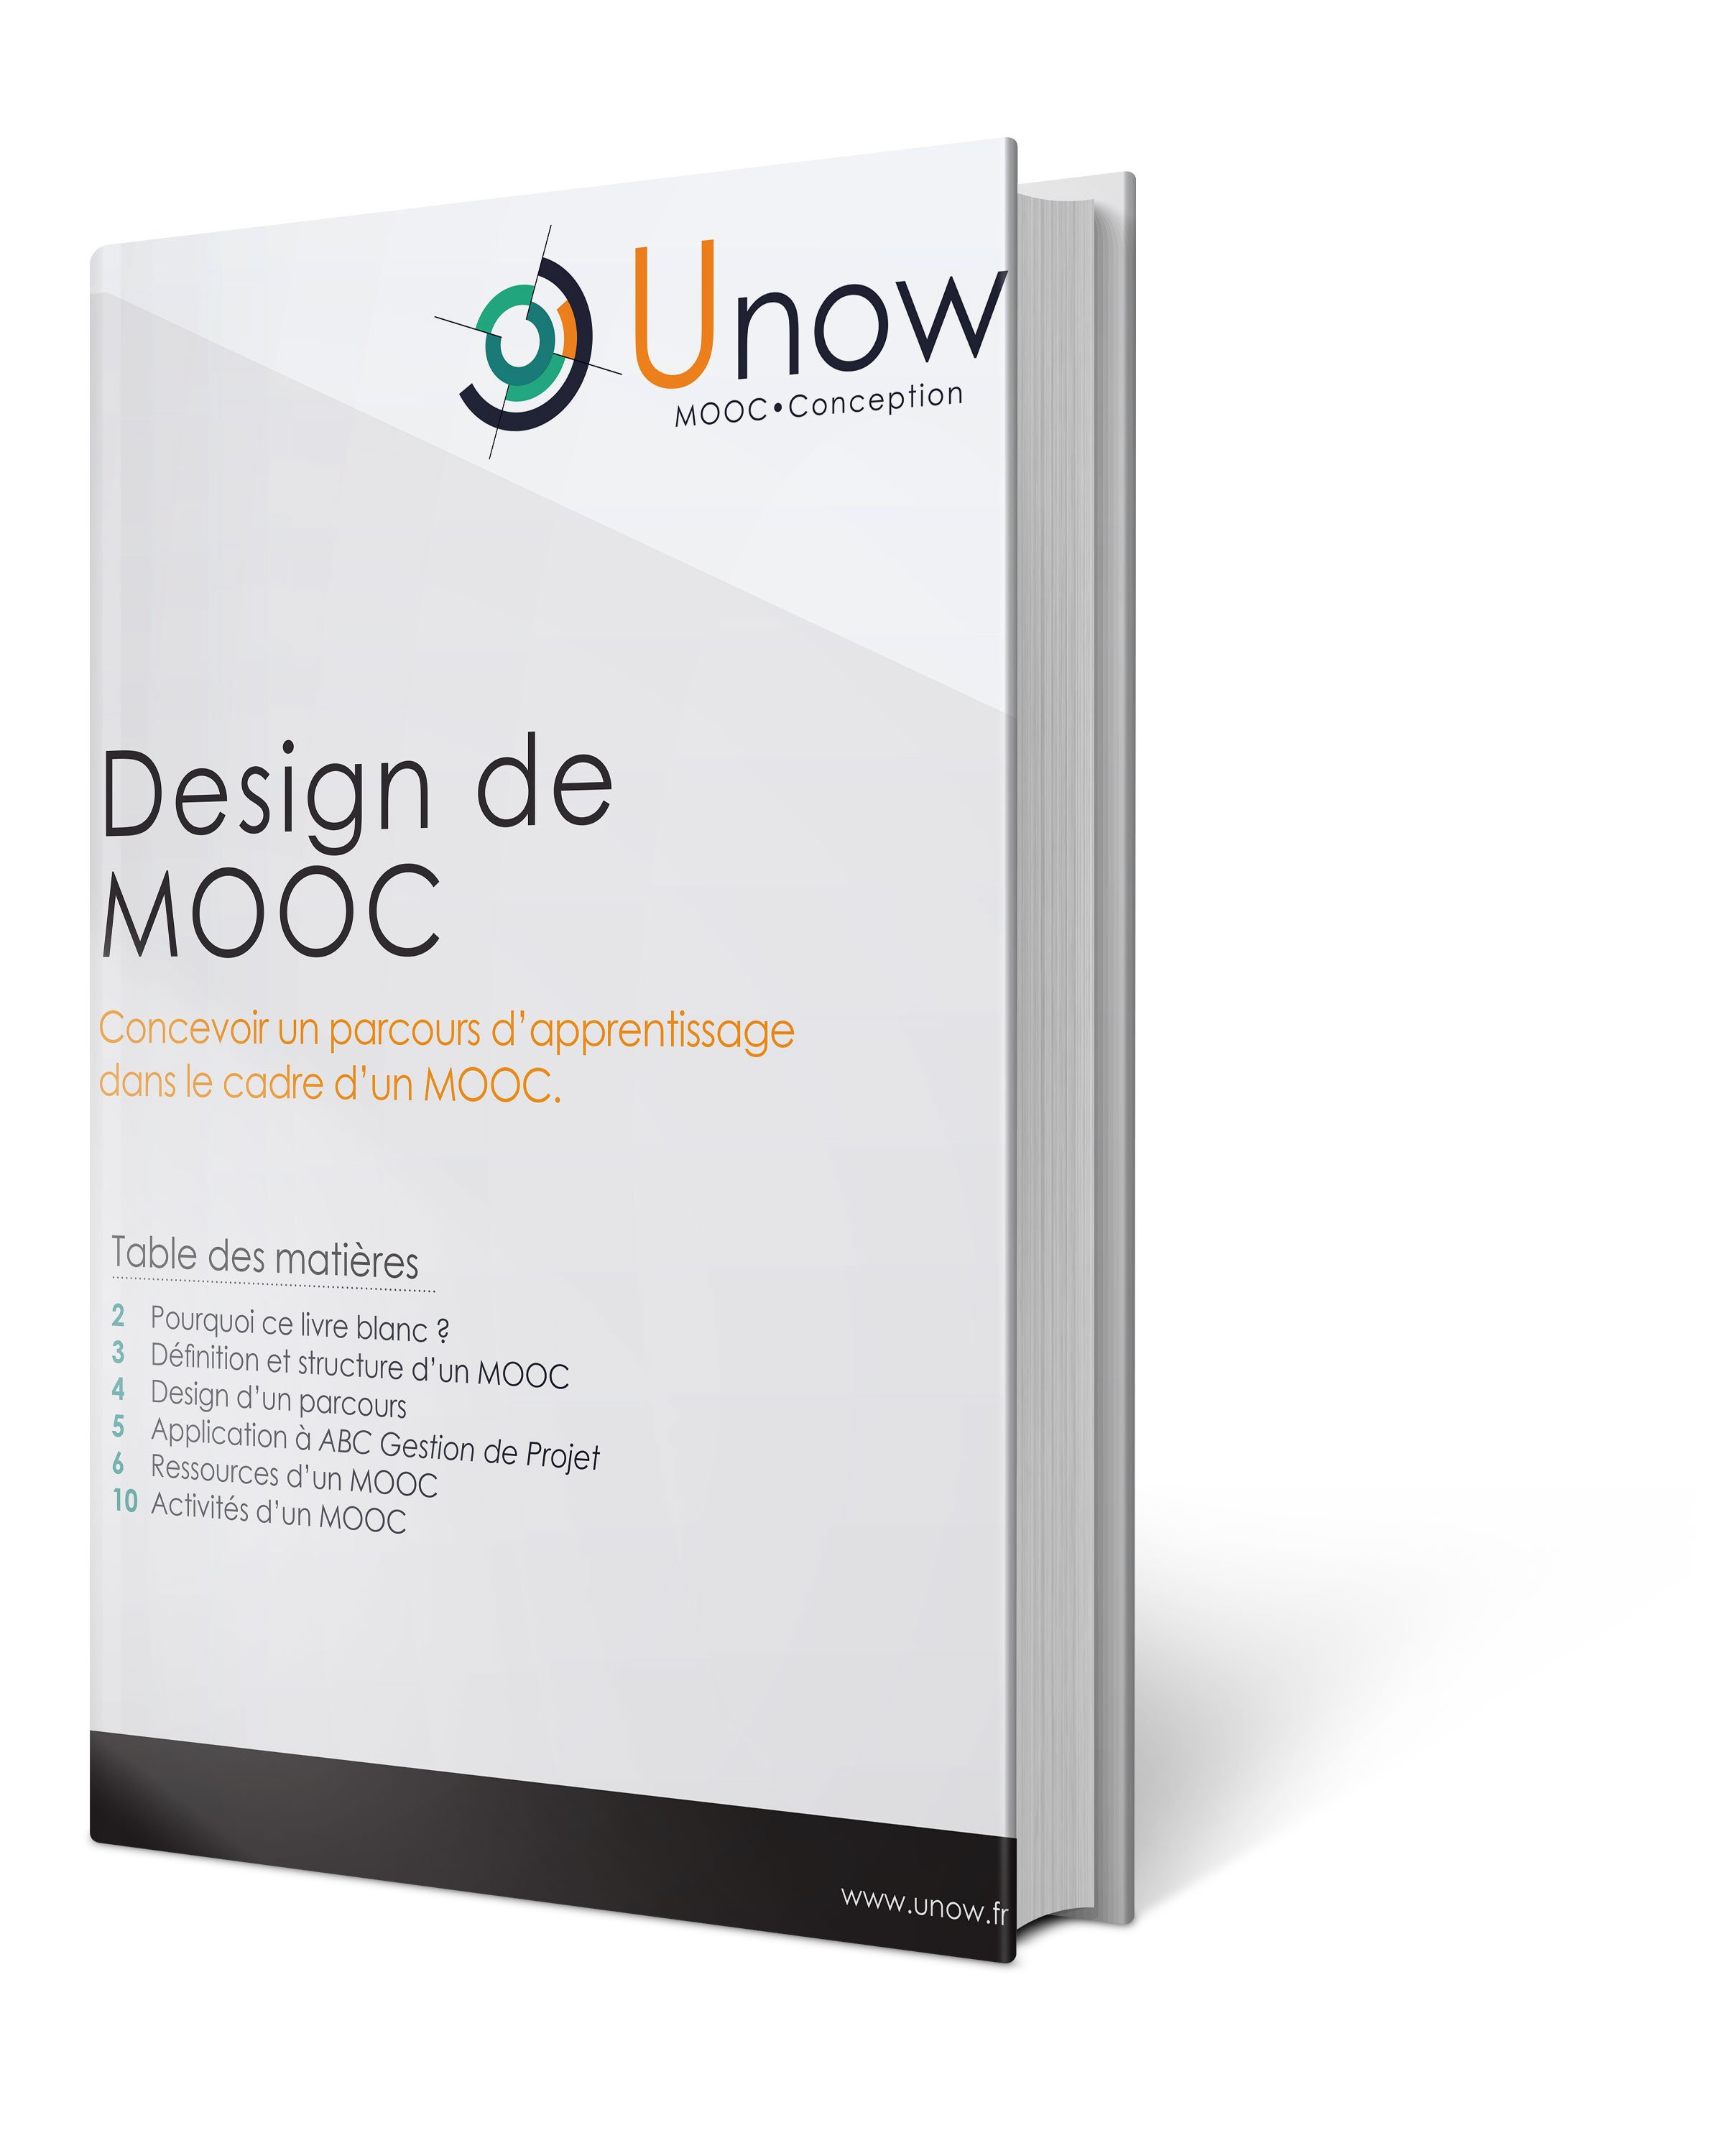 Couverture_Design_de_MOOC.jpg